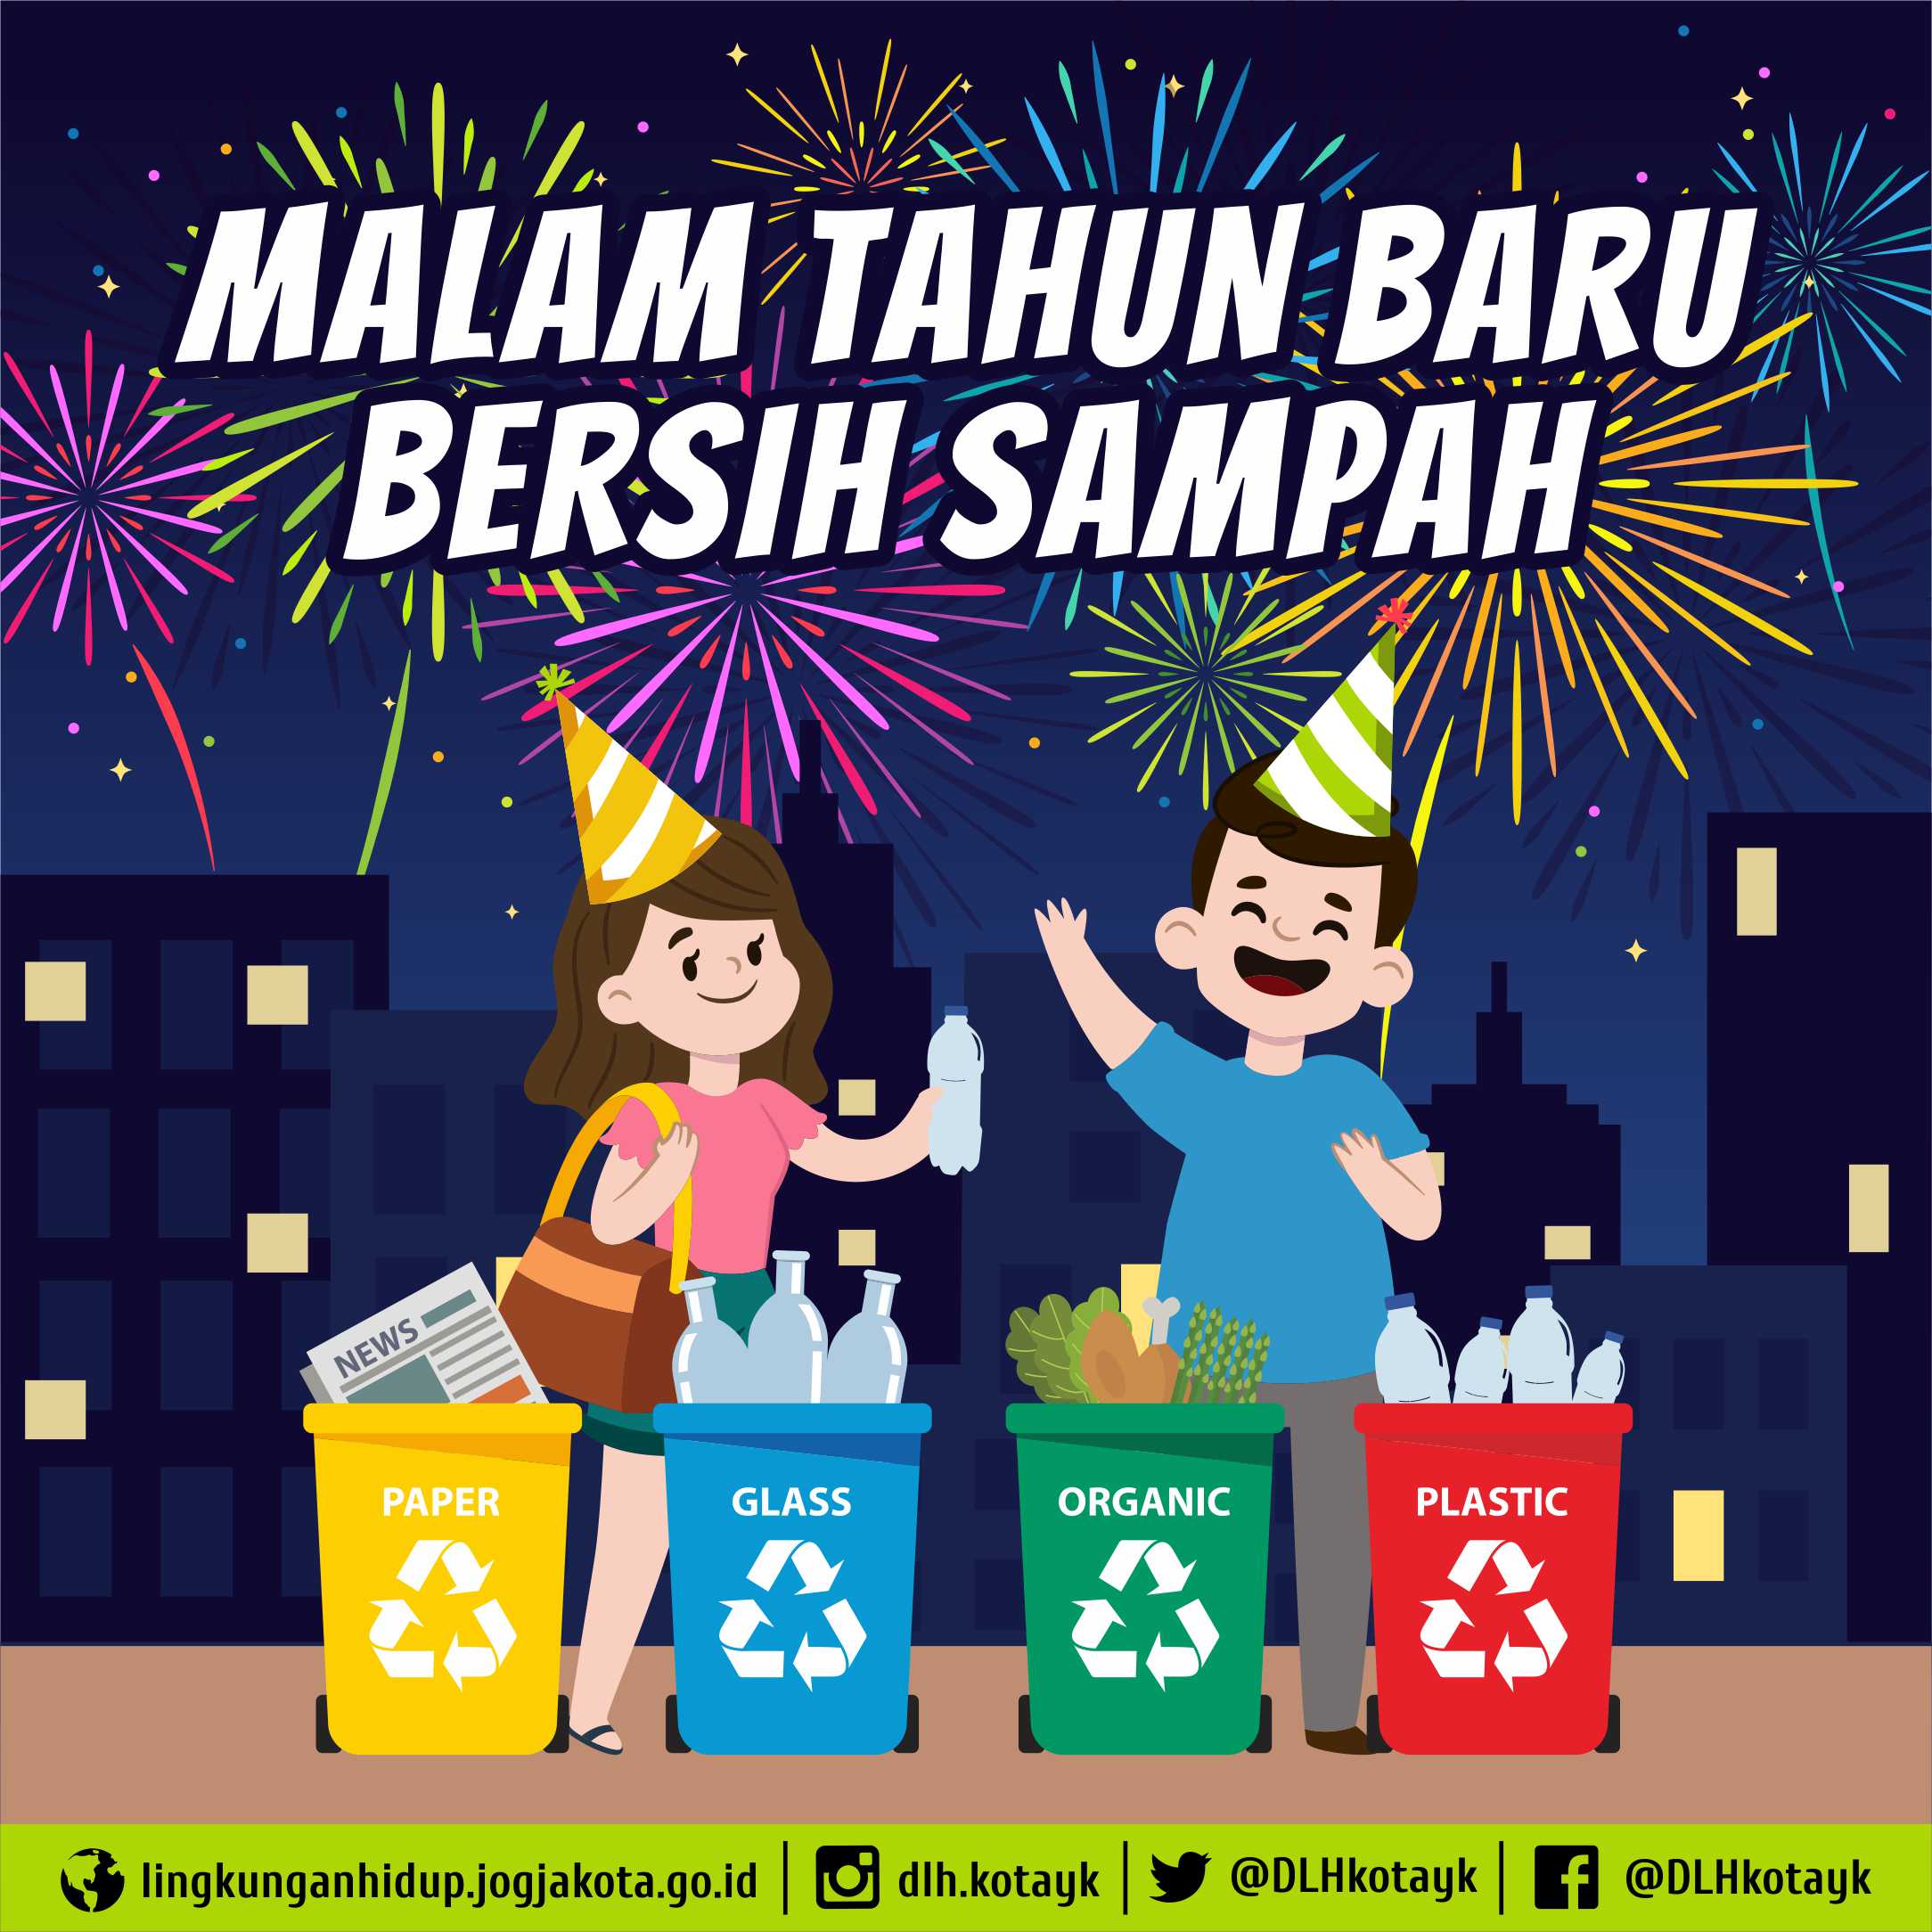 Surat Edaran Kepala DLH Kota Yogyakarta tentang Himbauan Bersih Sampah pada Perayaan Malam Tahun Baru 2019 di Kota Yogyakarta